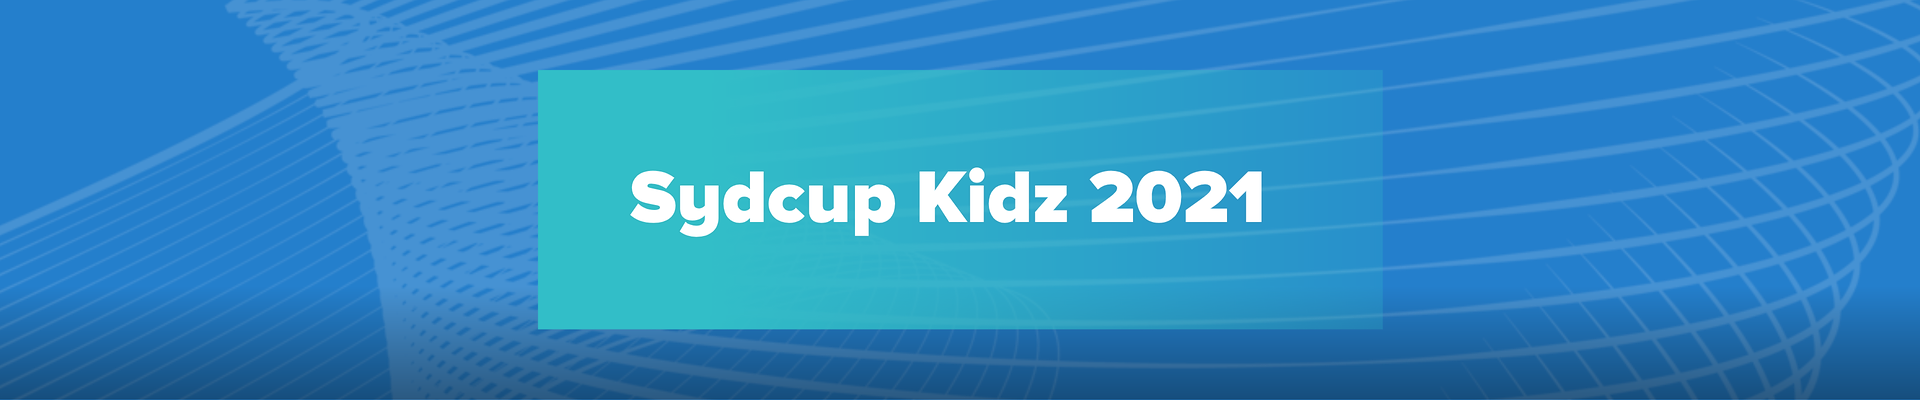 Syd Cup Kidz 2021, Afdeling 2 Løgum